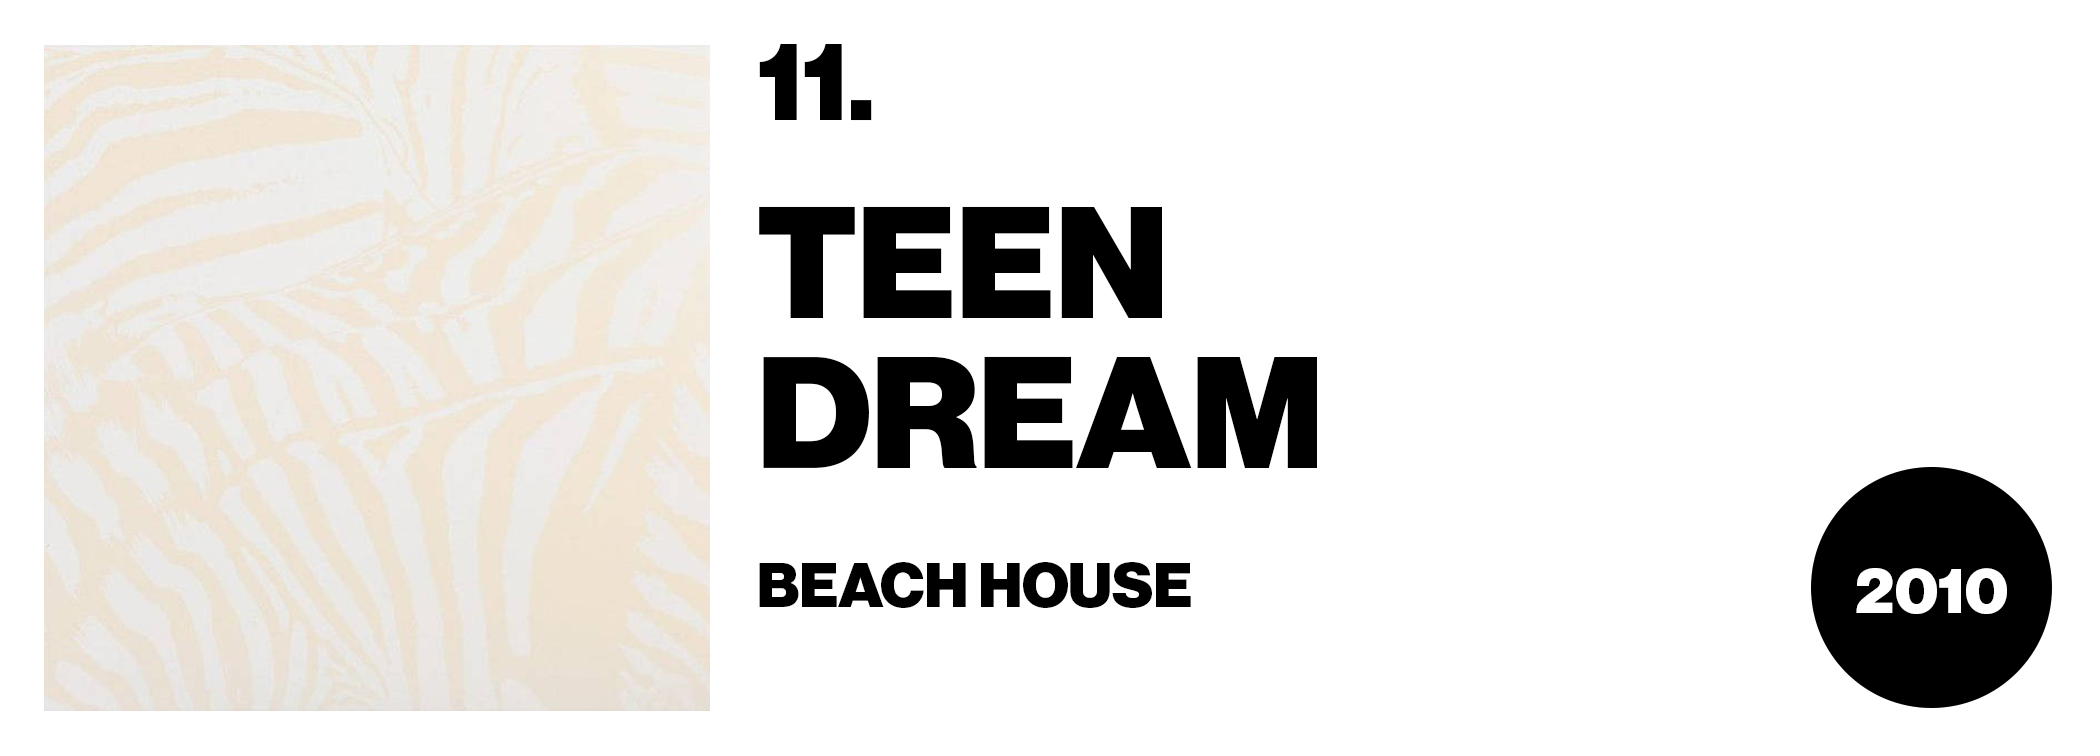 beach house teen dream publish photo